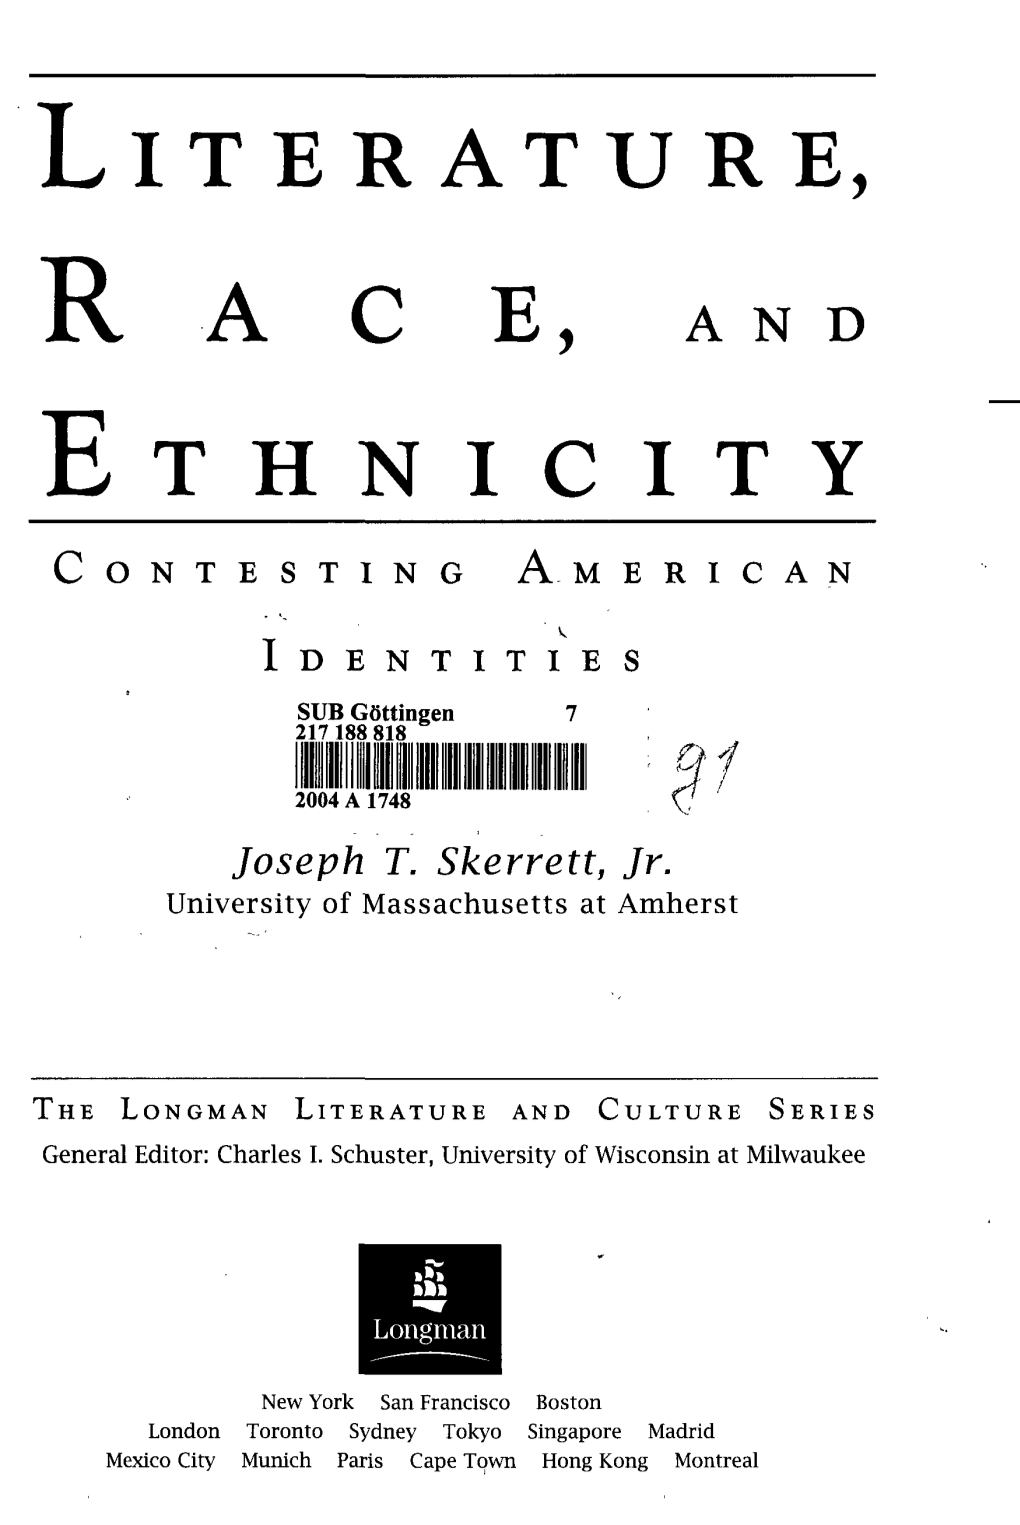 Literature, R a C E , Ethnicity